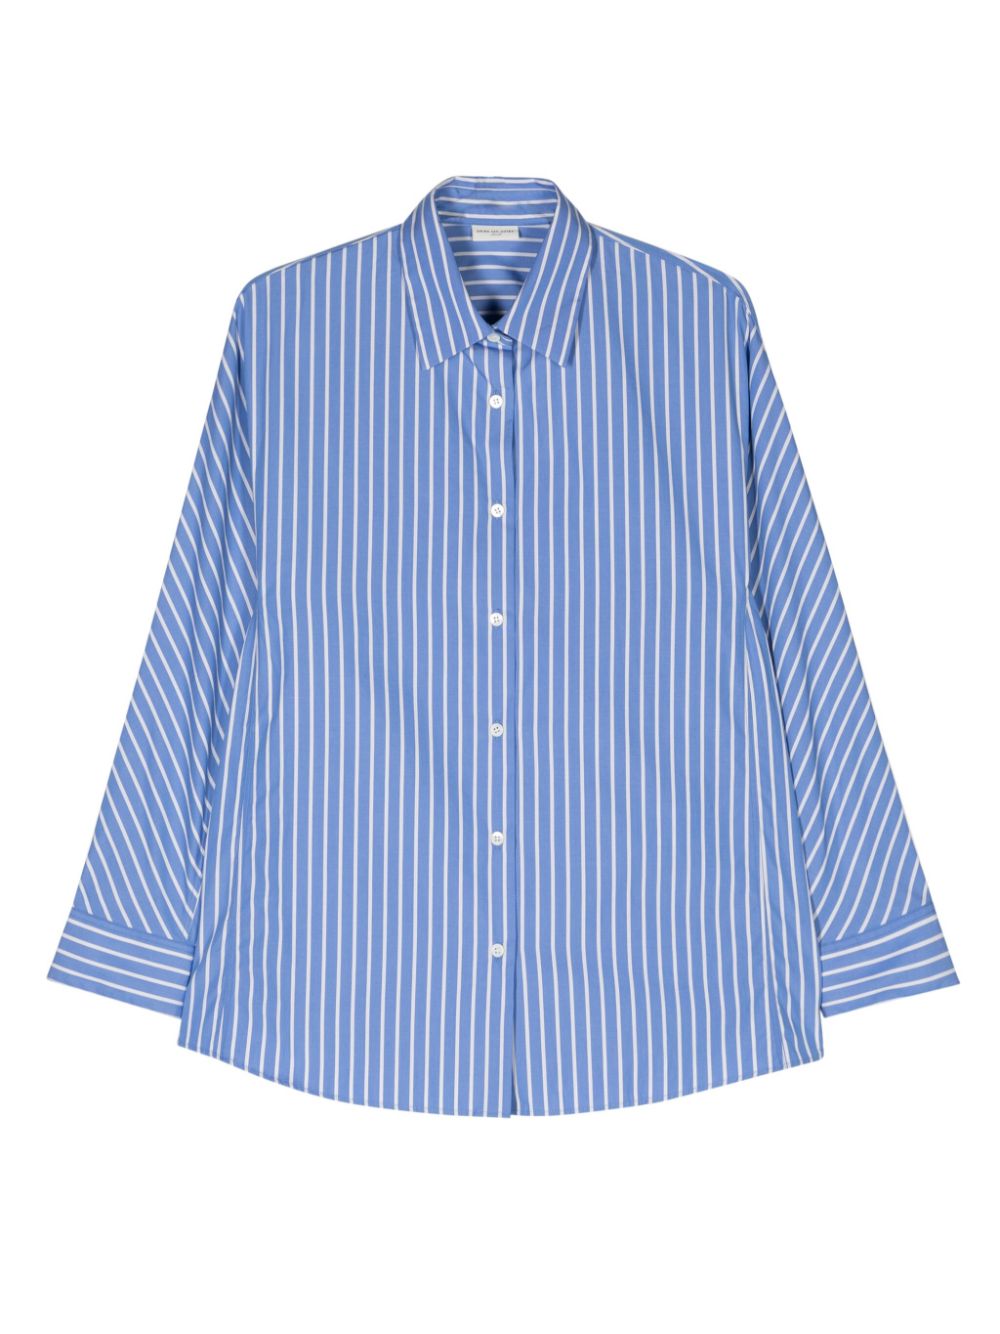 Dries Van Noten DRIES VAN NOTEN- Striped Cotton Shirt